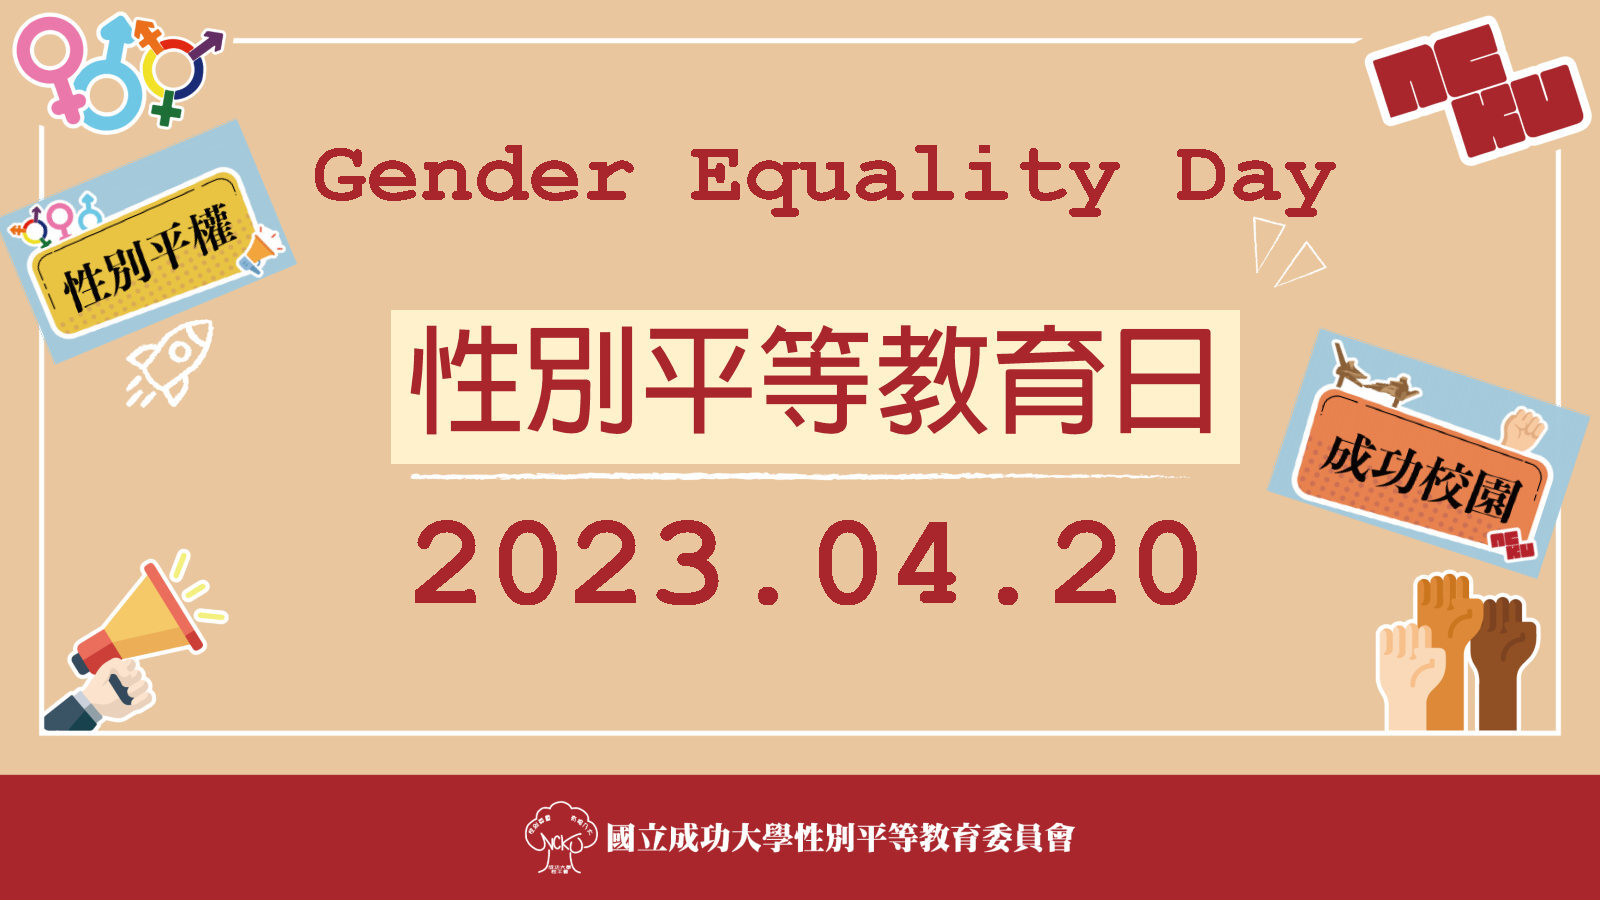 2023 年為教育部訂定每年 4 月 20 日為「性別平等教育日」的第一年，成大性平會陸續推出多元化精彩活動